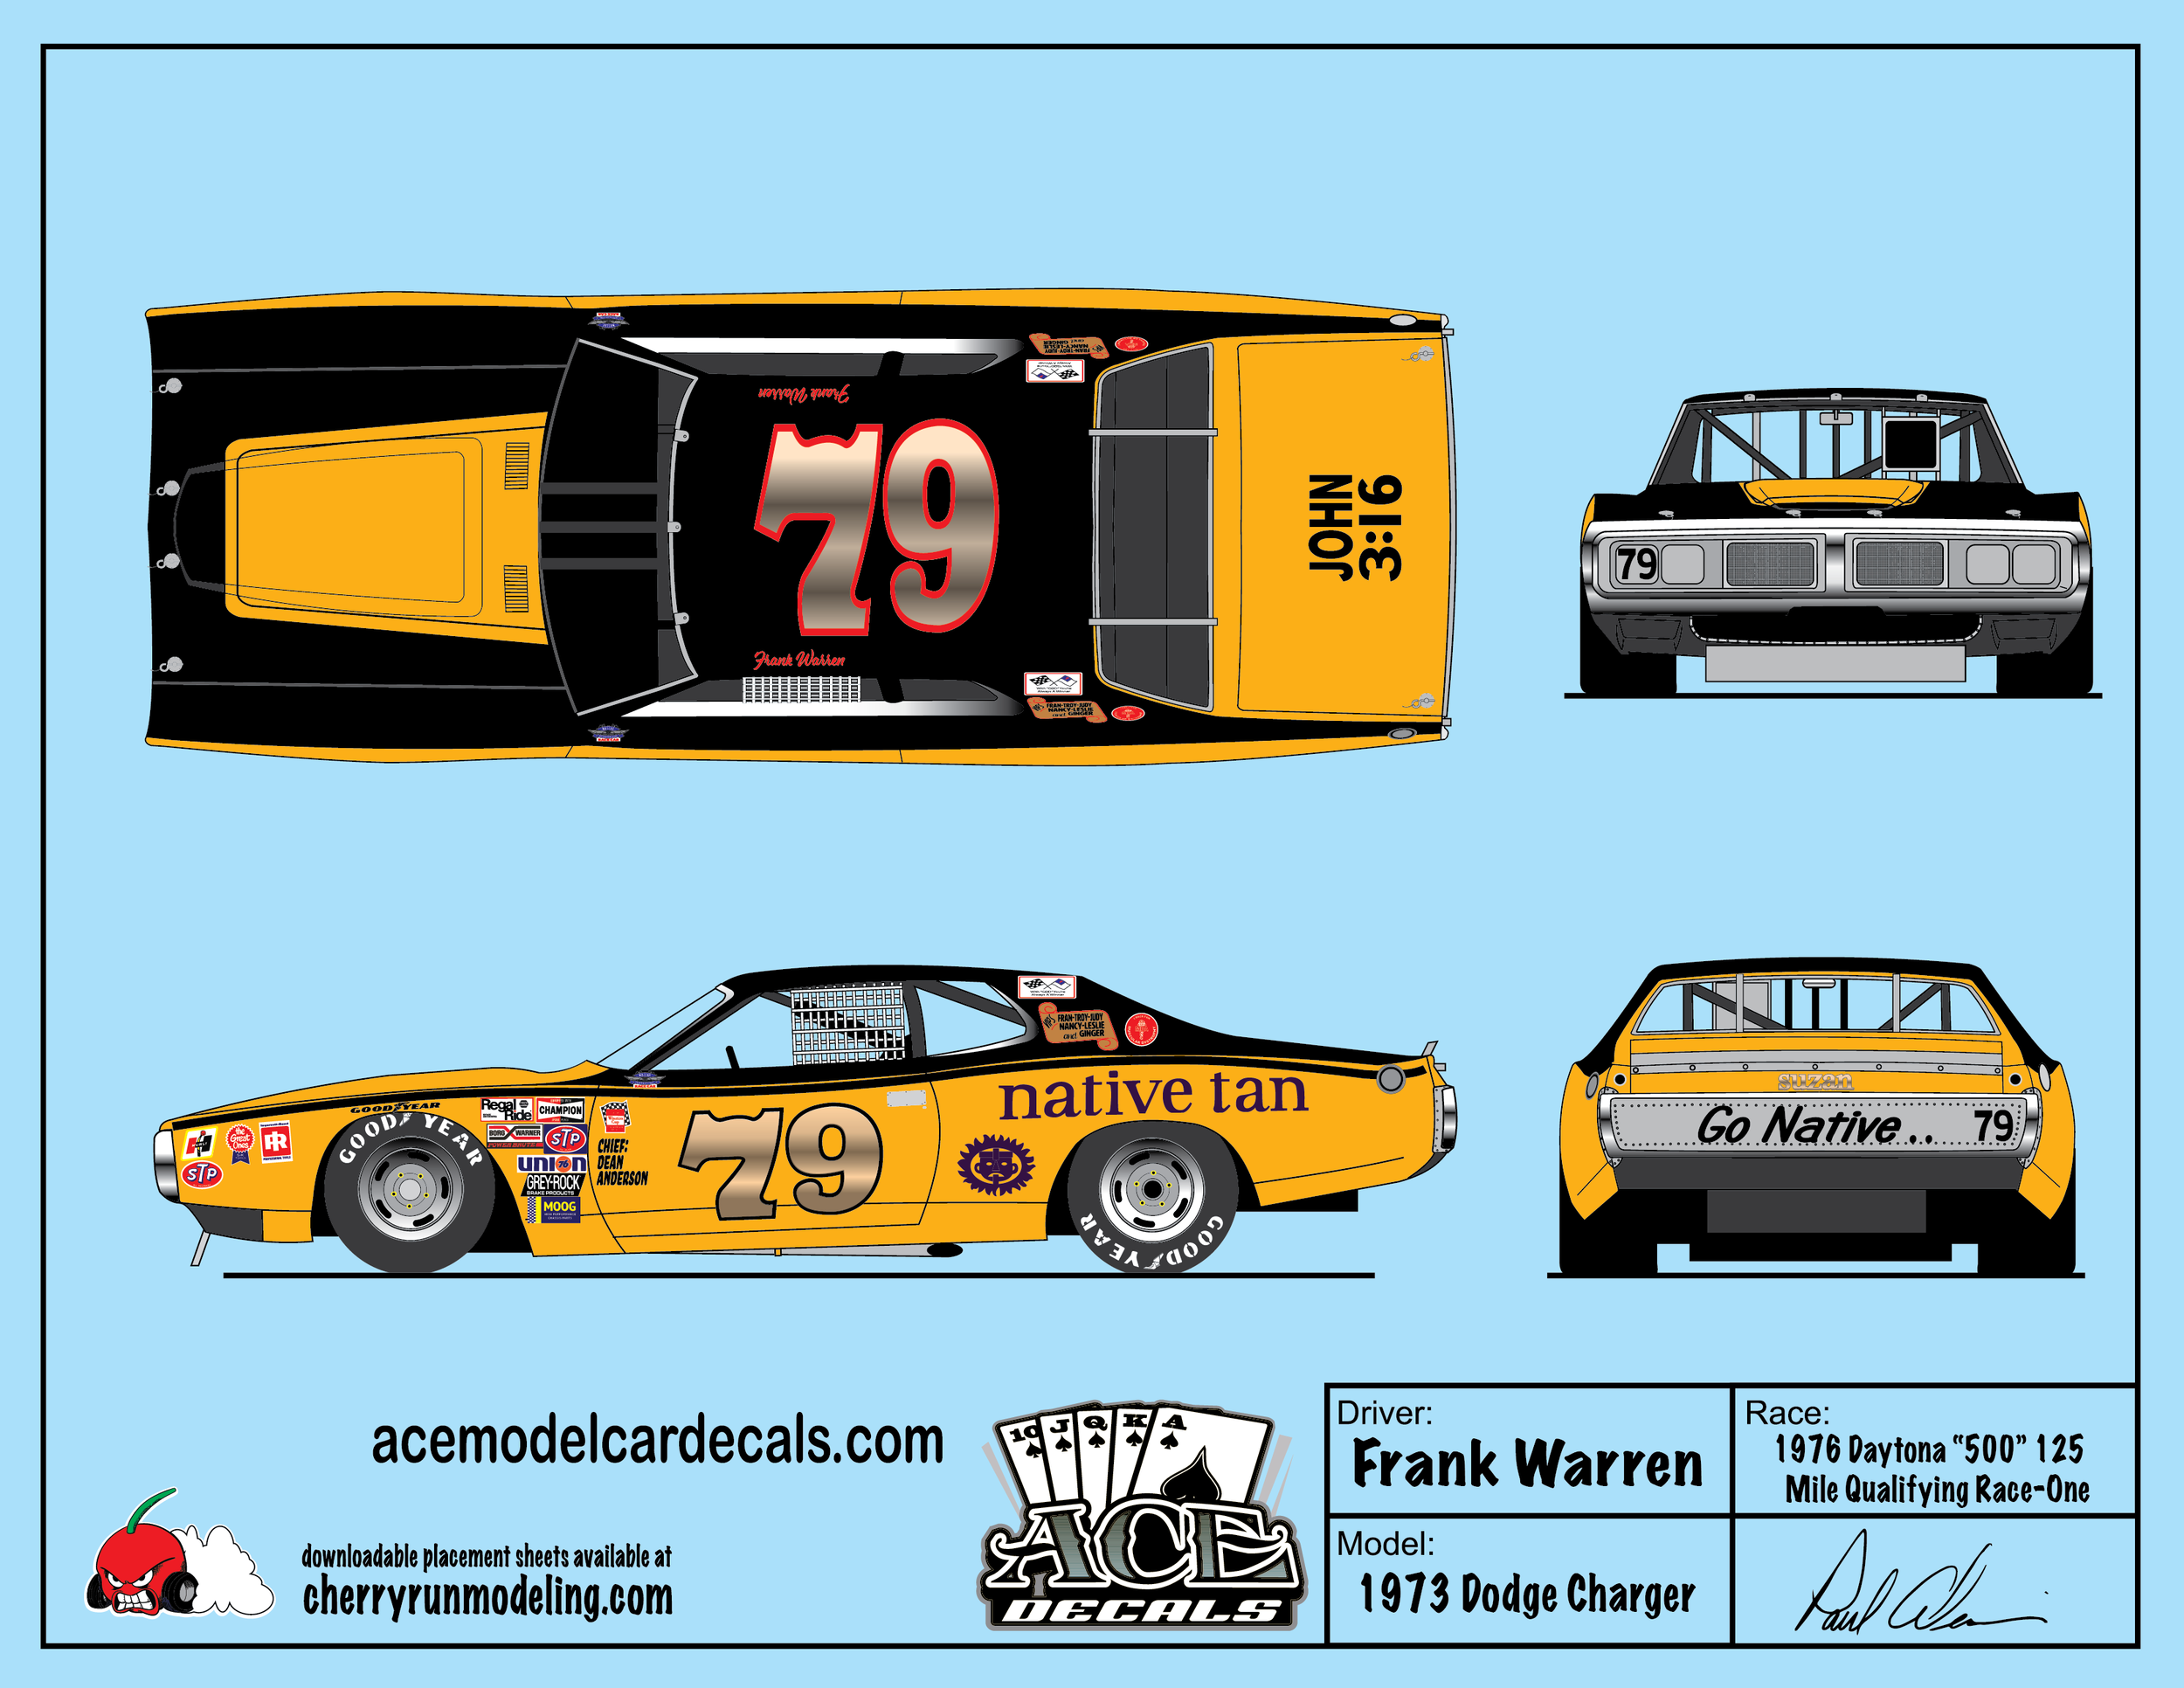 Frank Warren 1976 Daytona 500-01.png